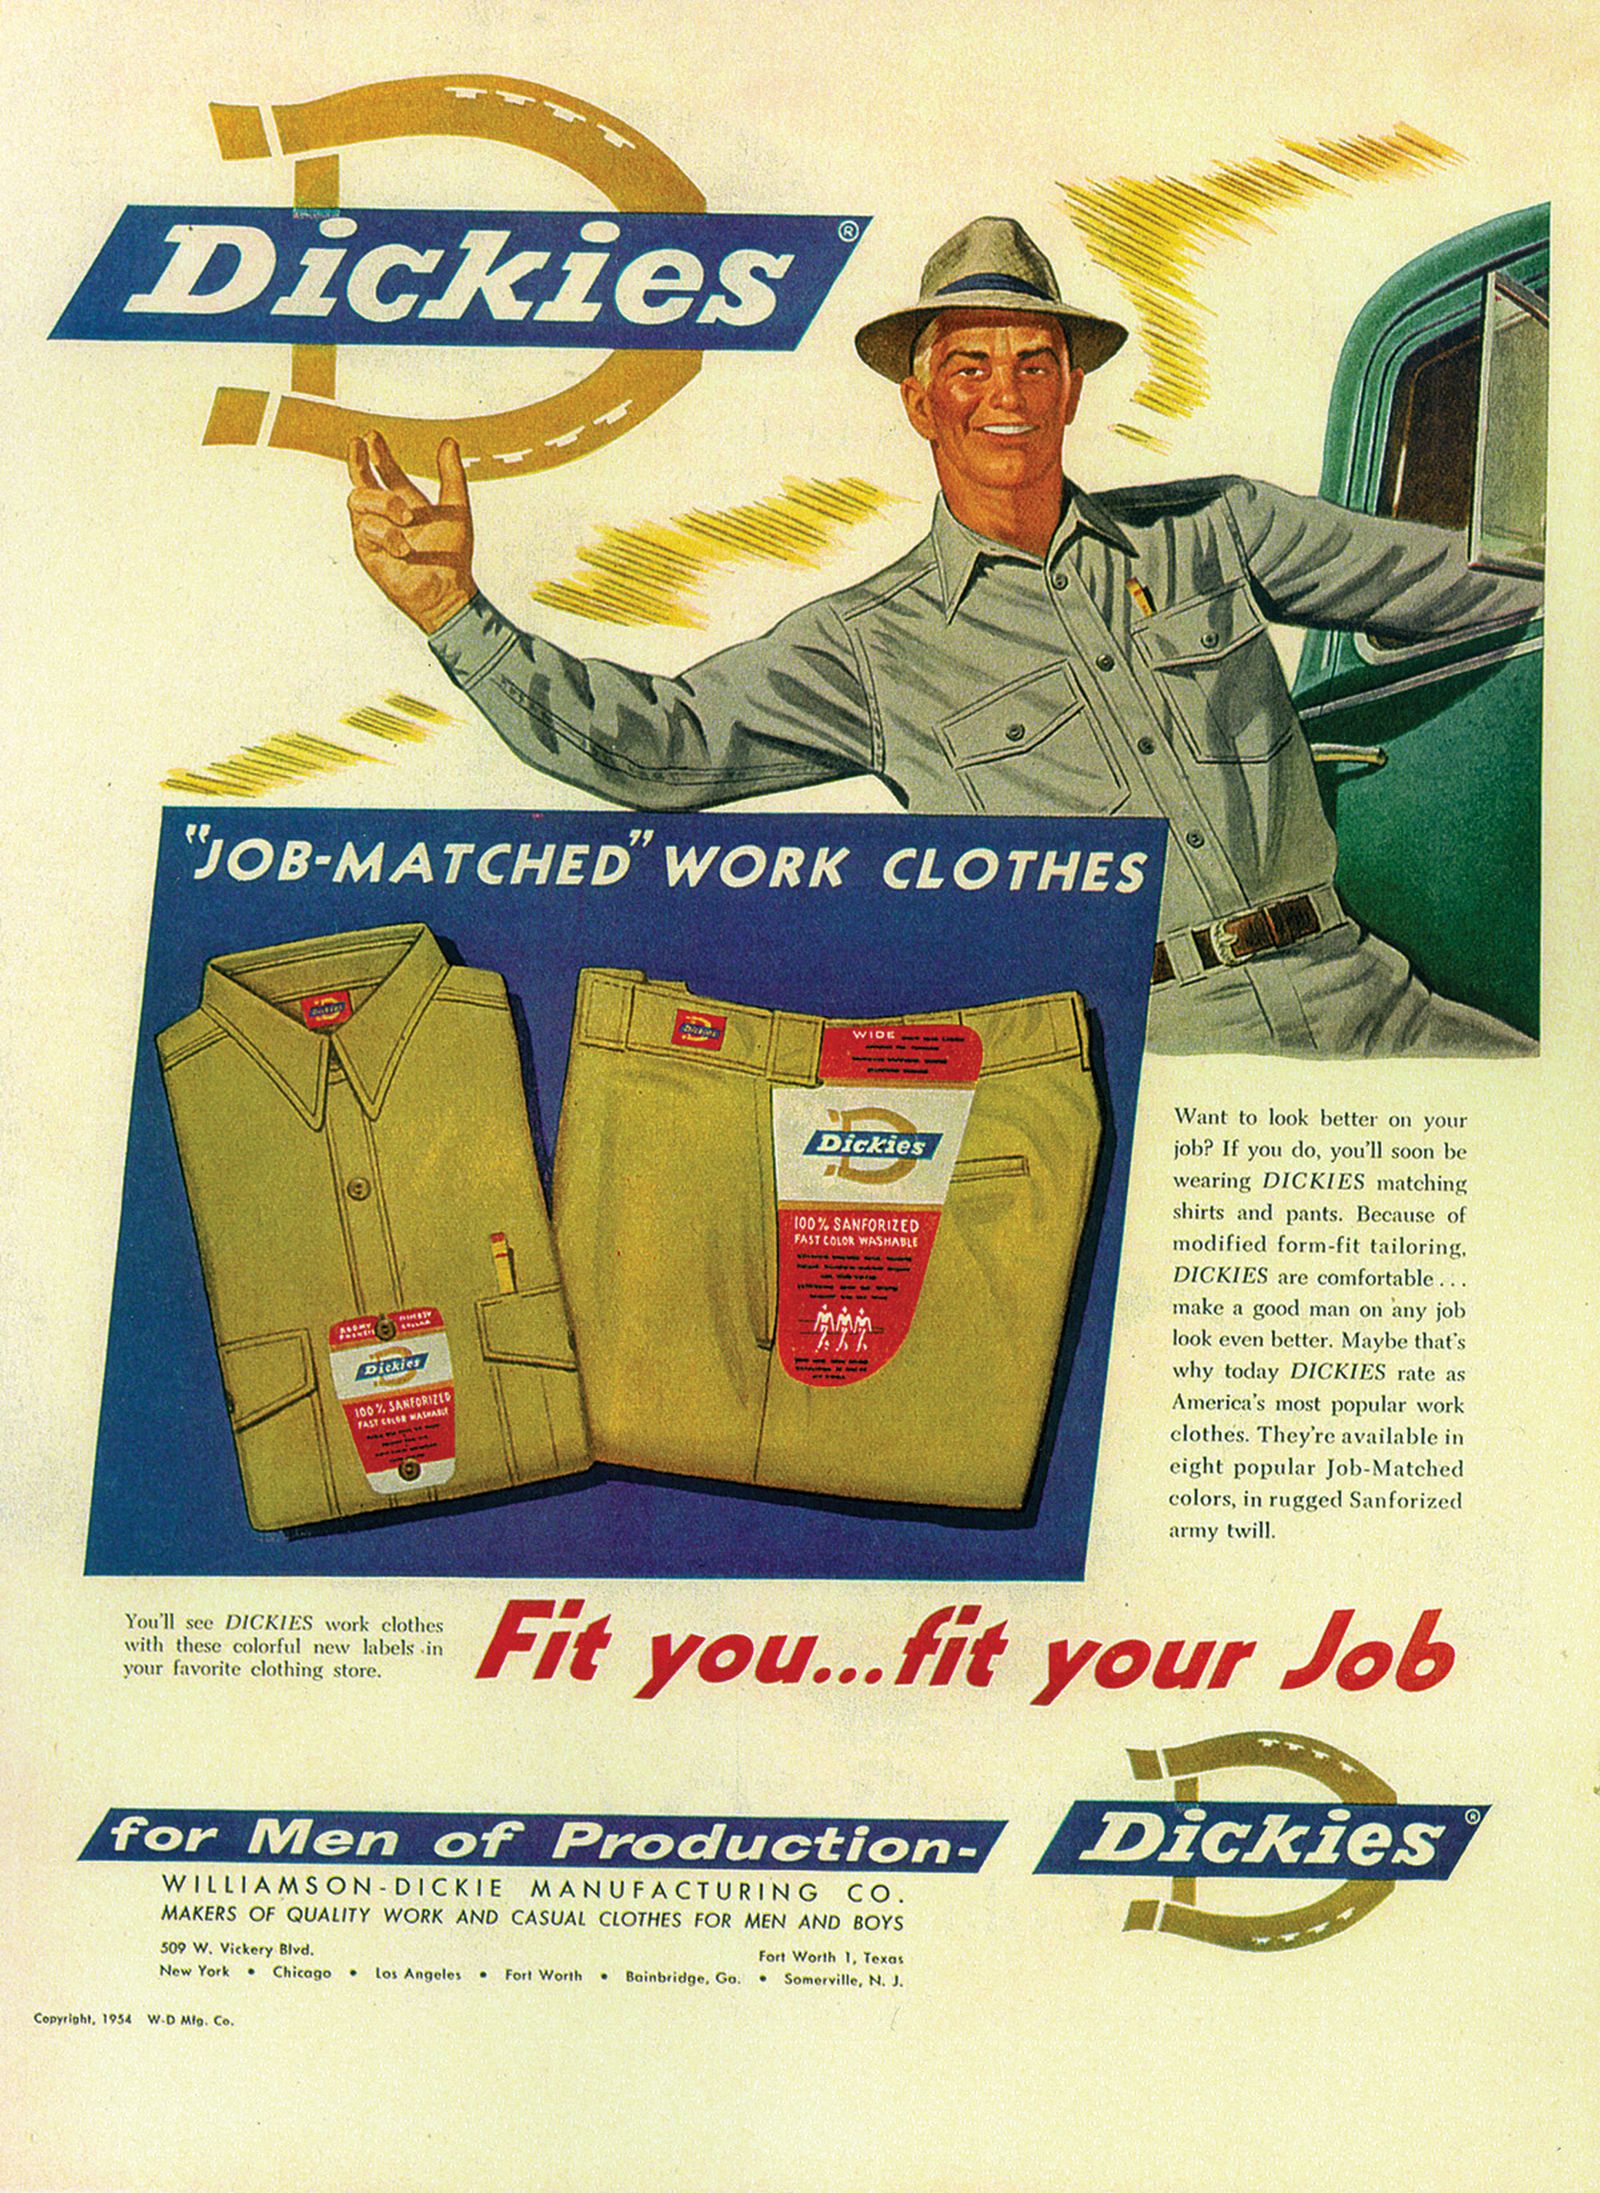 Dickies advertisement, 1957.